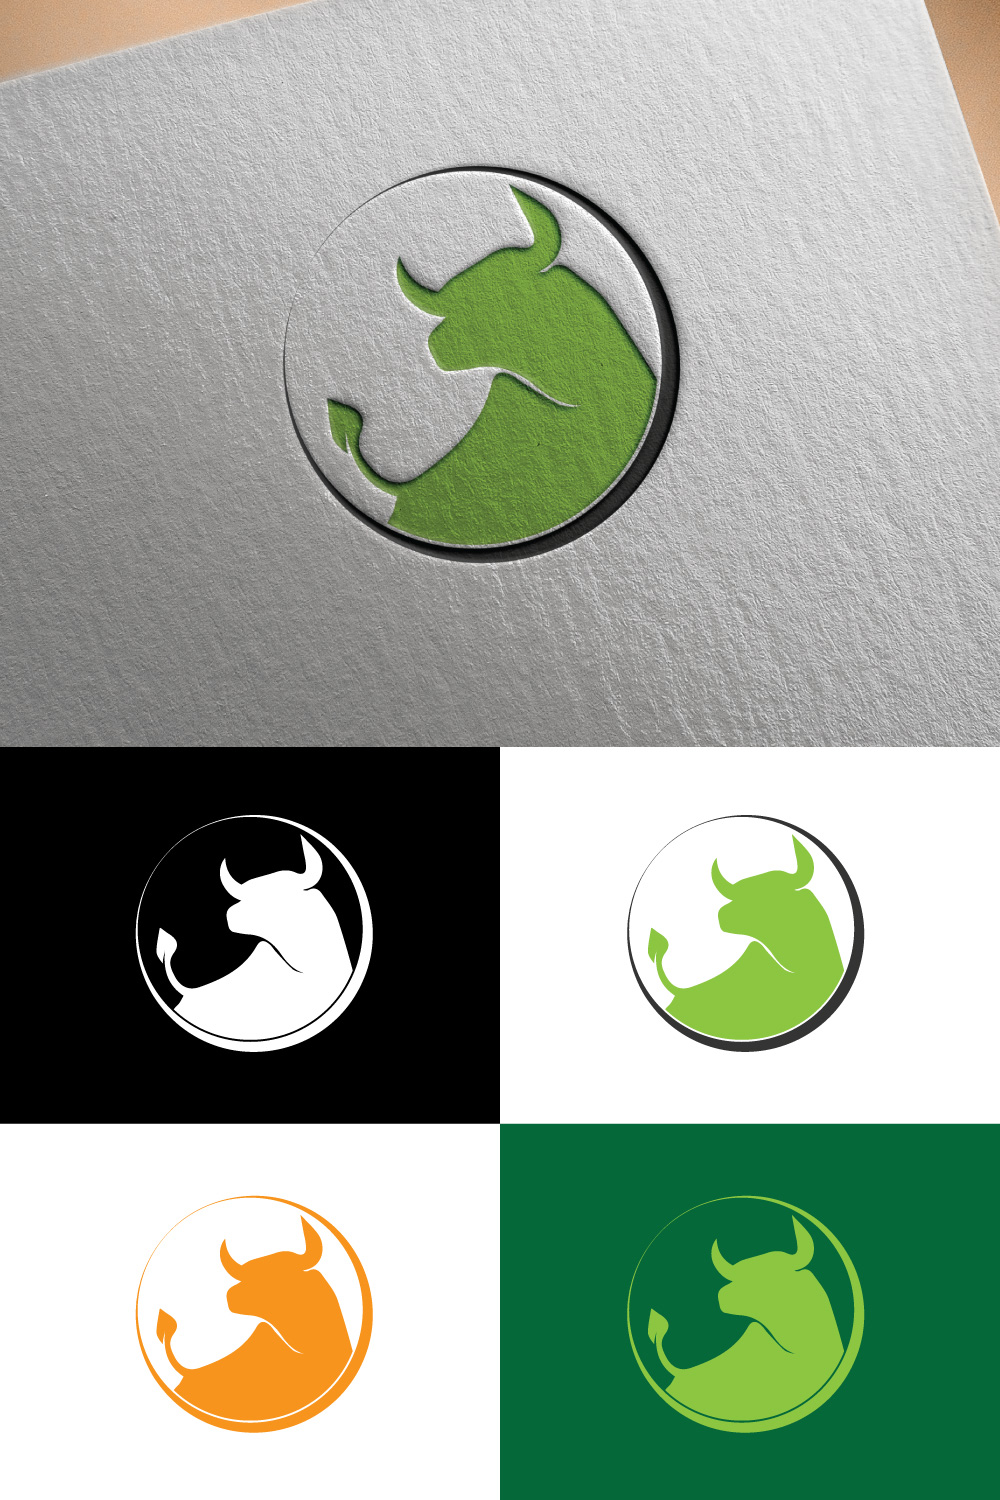 Bull Head logo design pinterest preview image.